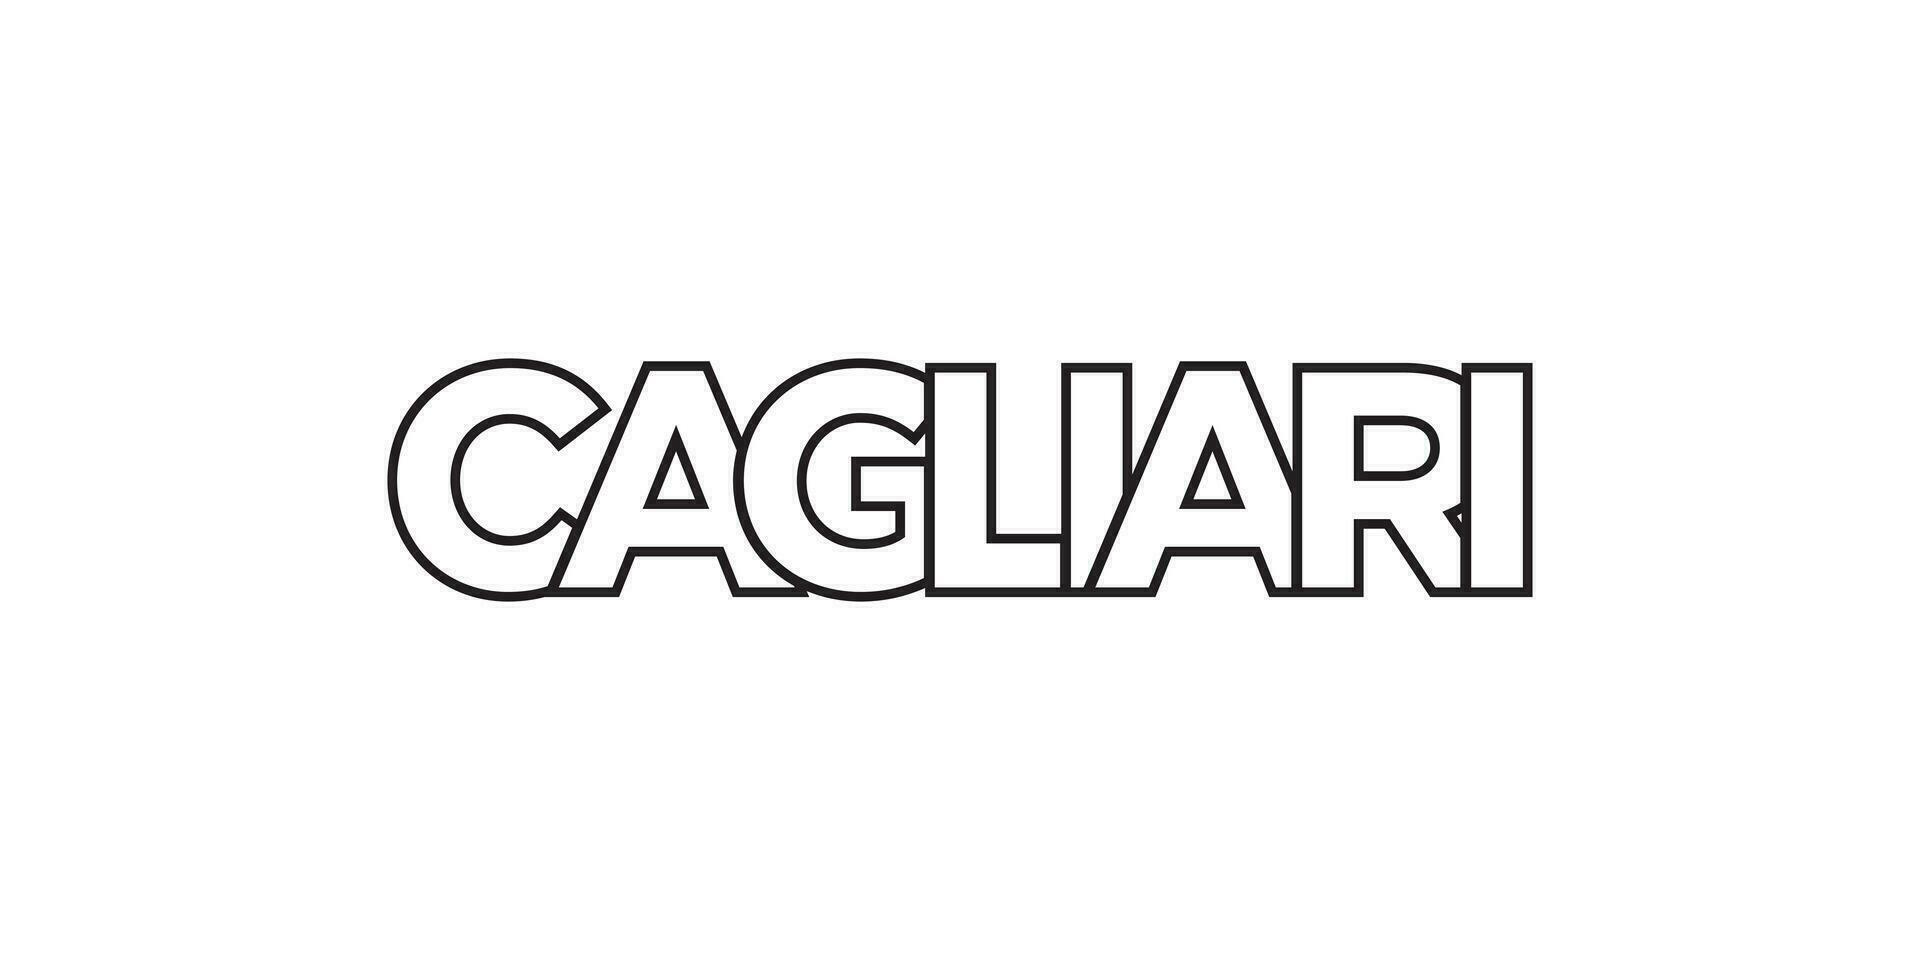 cagliari im das Italien Emblem. das Design Eigenschaften ein geometrisch Stil, Vektor Illustration mit Fett gedruckt Typografie im ein modern Schriftart. das Grafik Slogan Beschriftung.